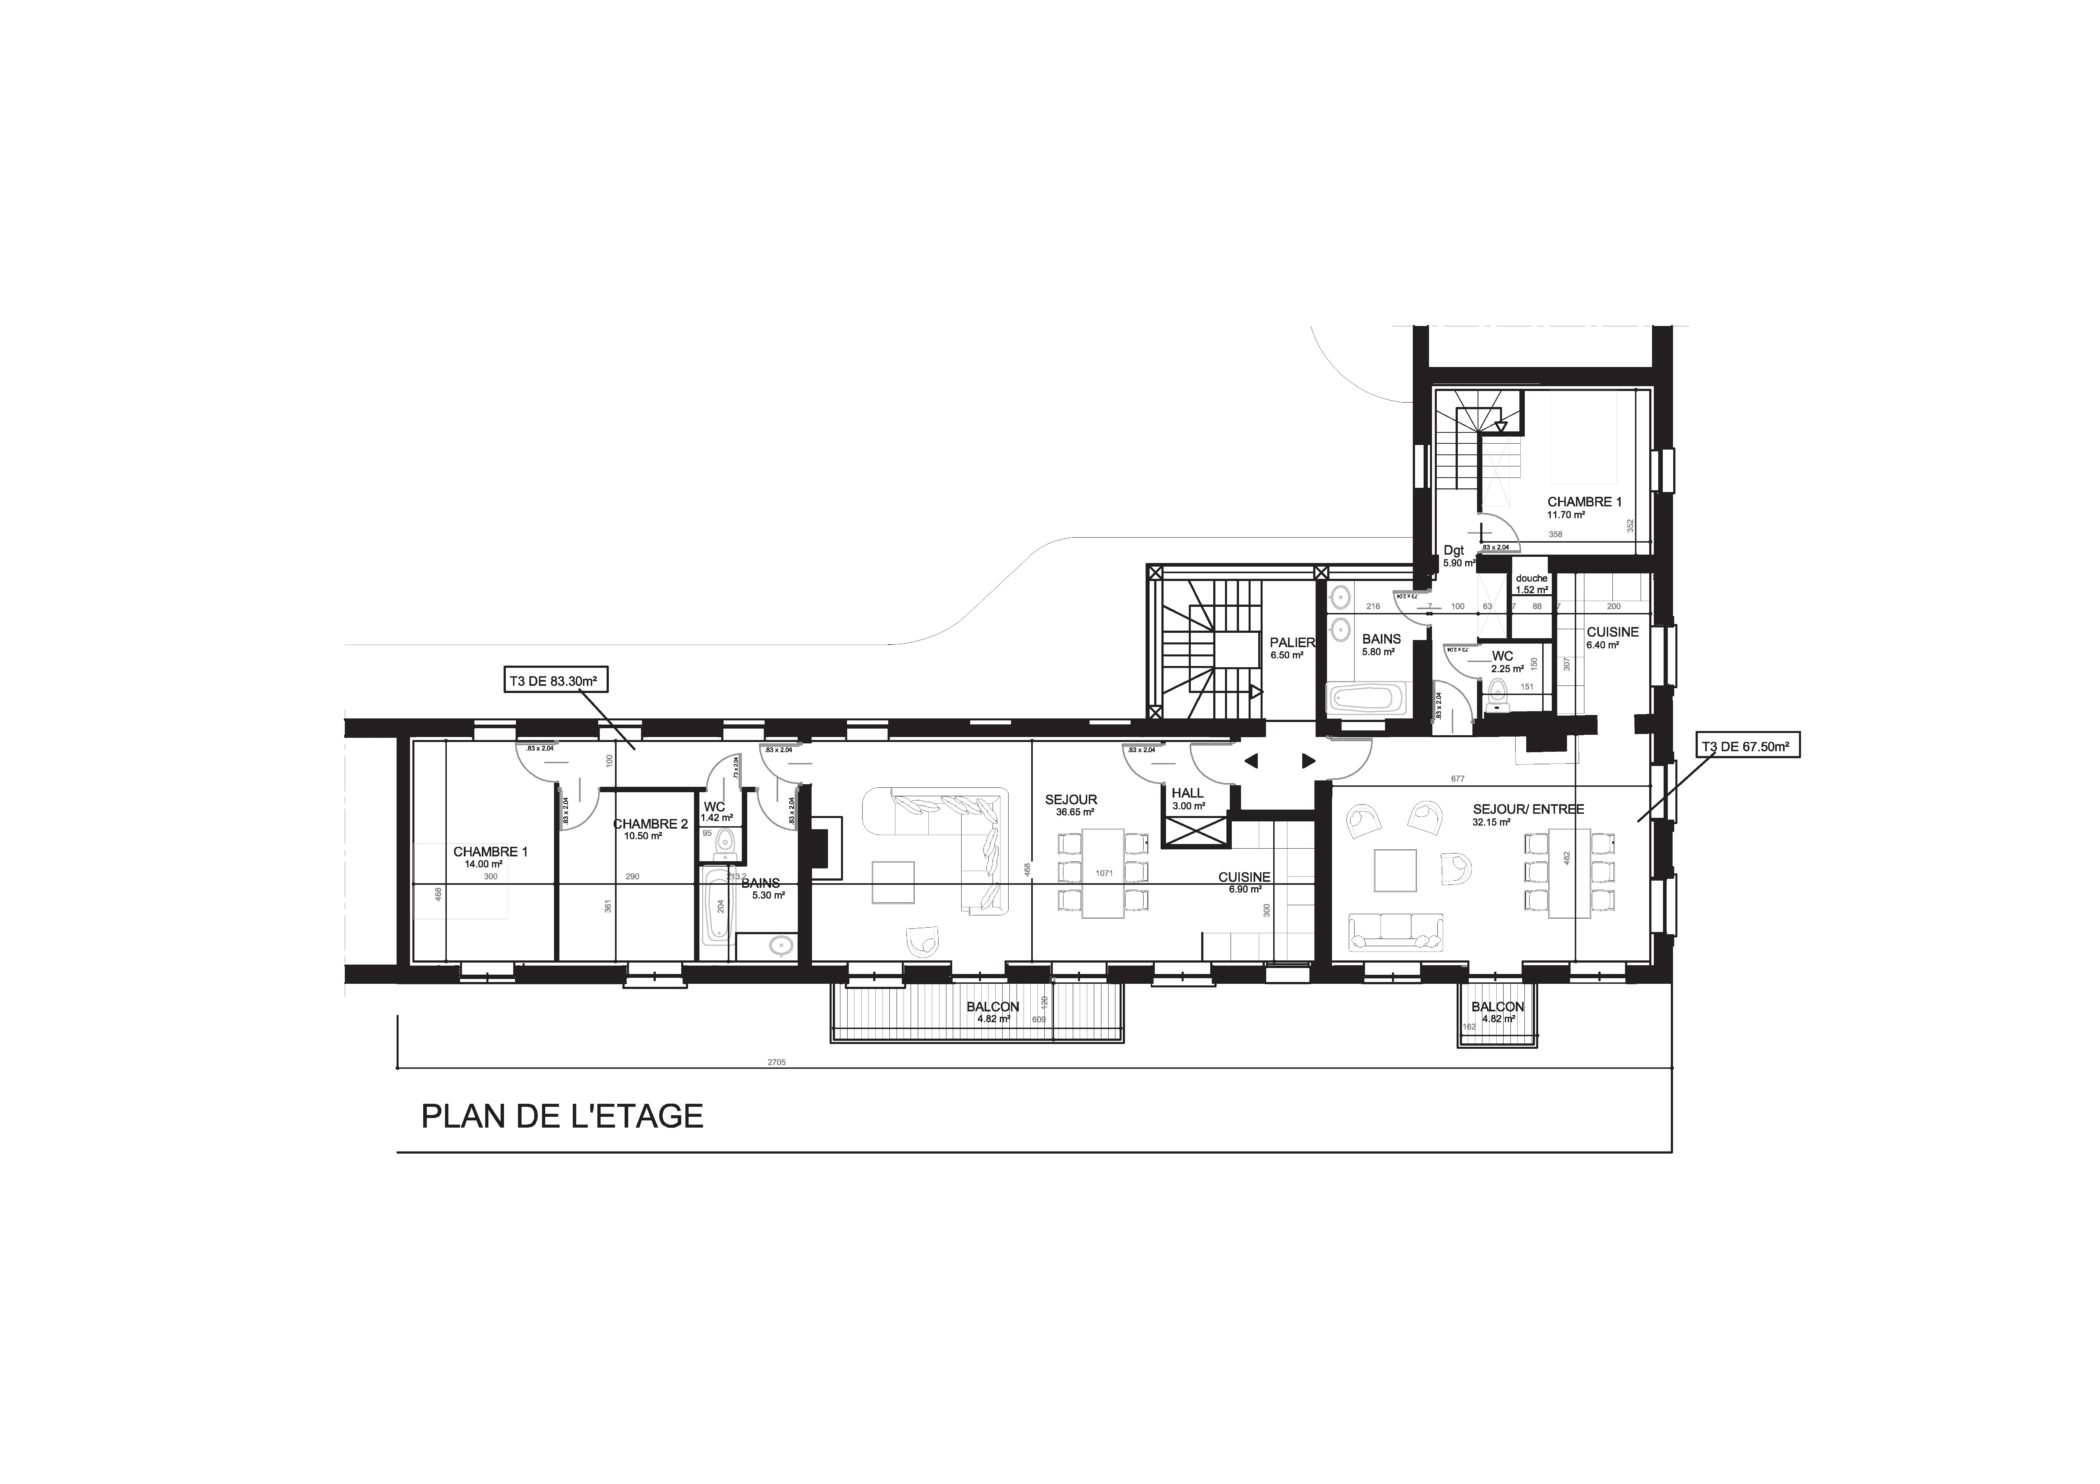 Nicolas Delannoy architecte -PROJET réhabilitation _ logement collectif - metropole lilloise plan étage 3